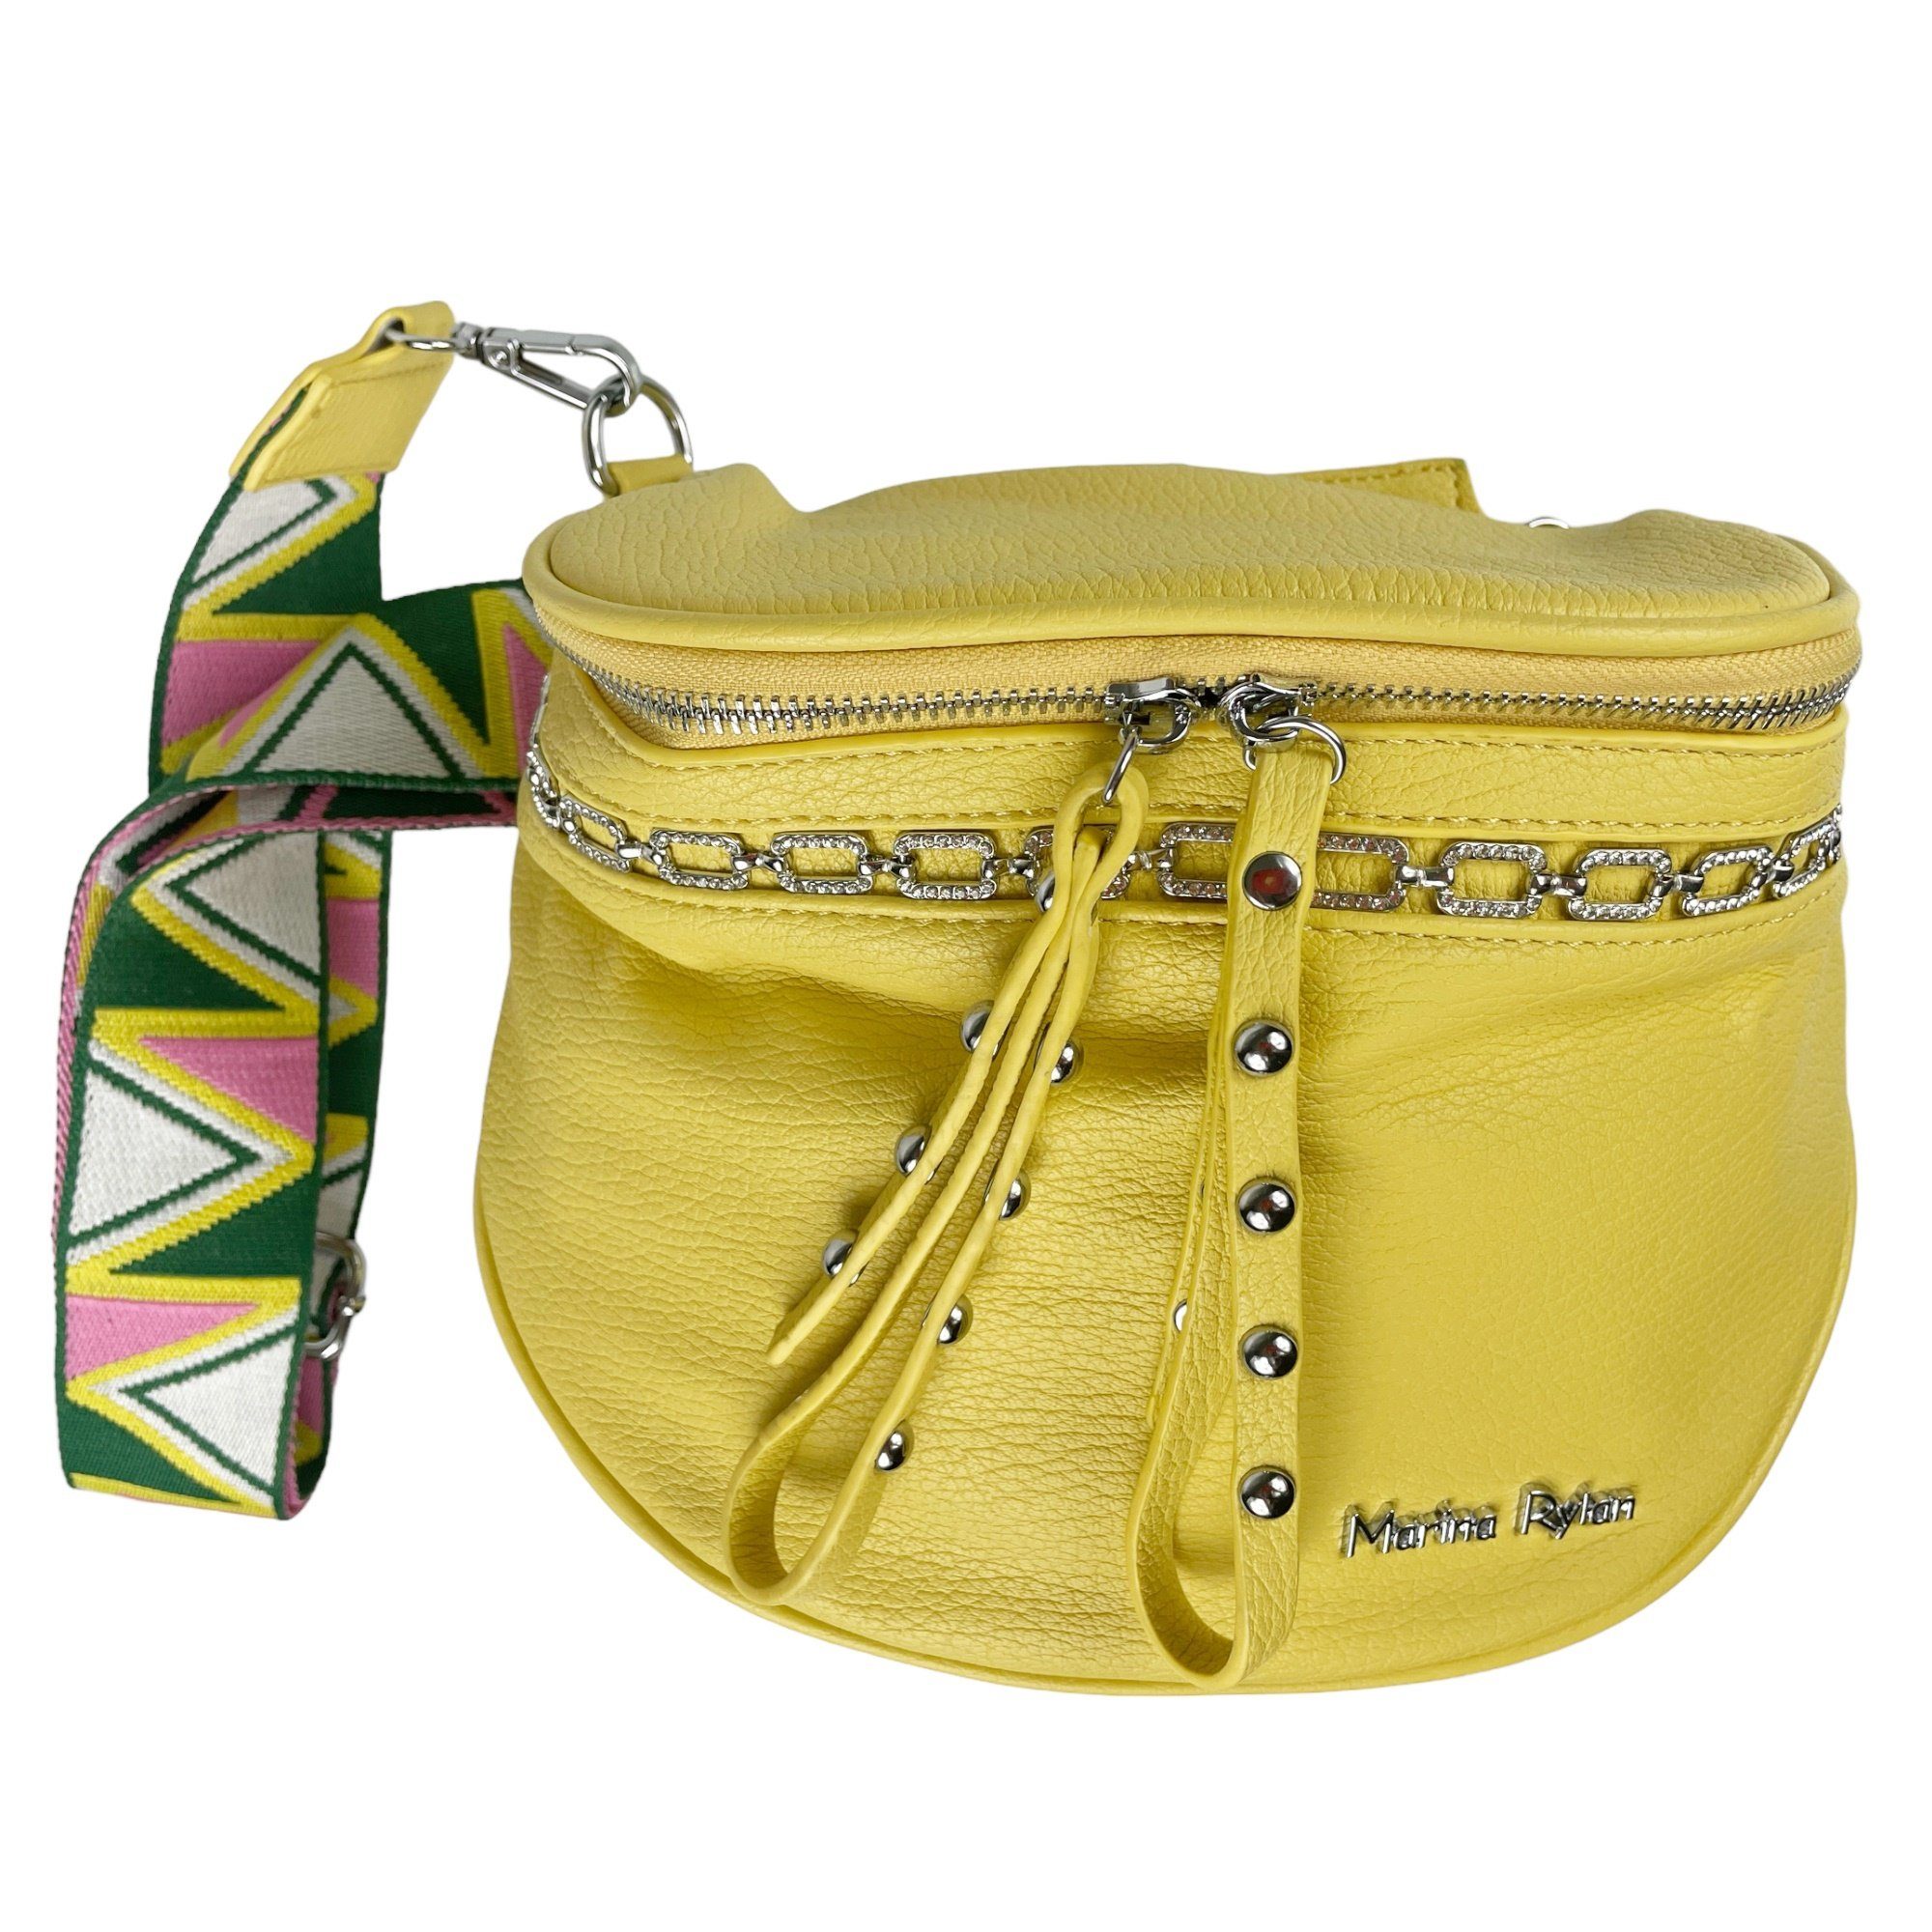 Taschen4life Bauchtasche große crossbody Bauchtasche, Umhängetasche mit breiten Schultergurt, uni, sportlich & elegant gelb